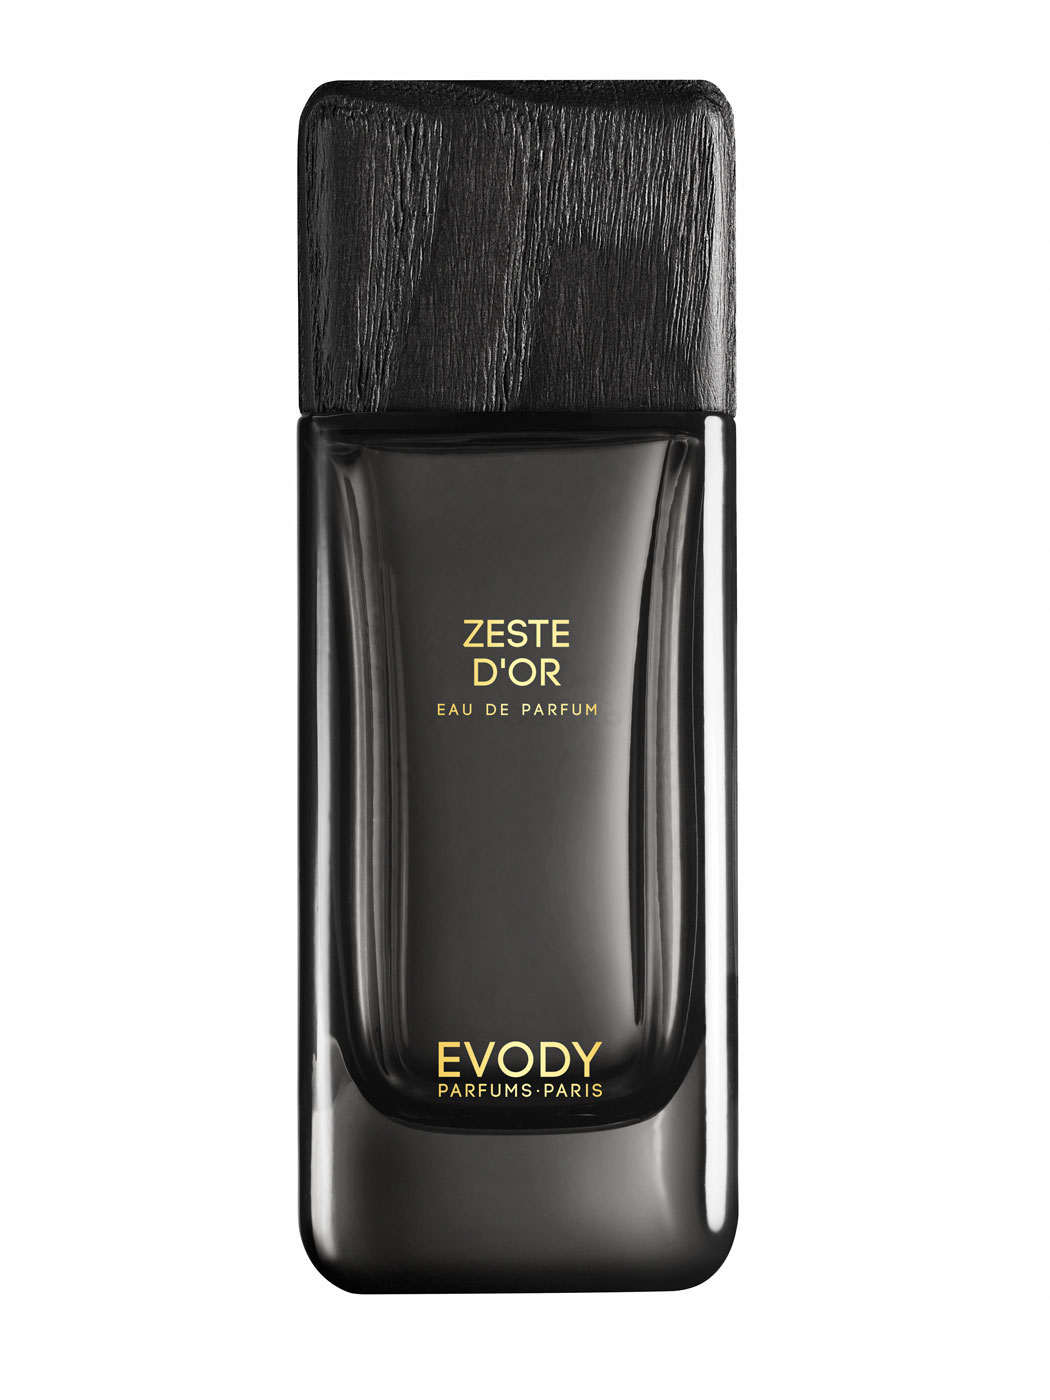 Evody - Collection Premiere - Zeste D'Or Eau de Parfum 100ml